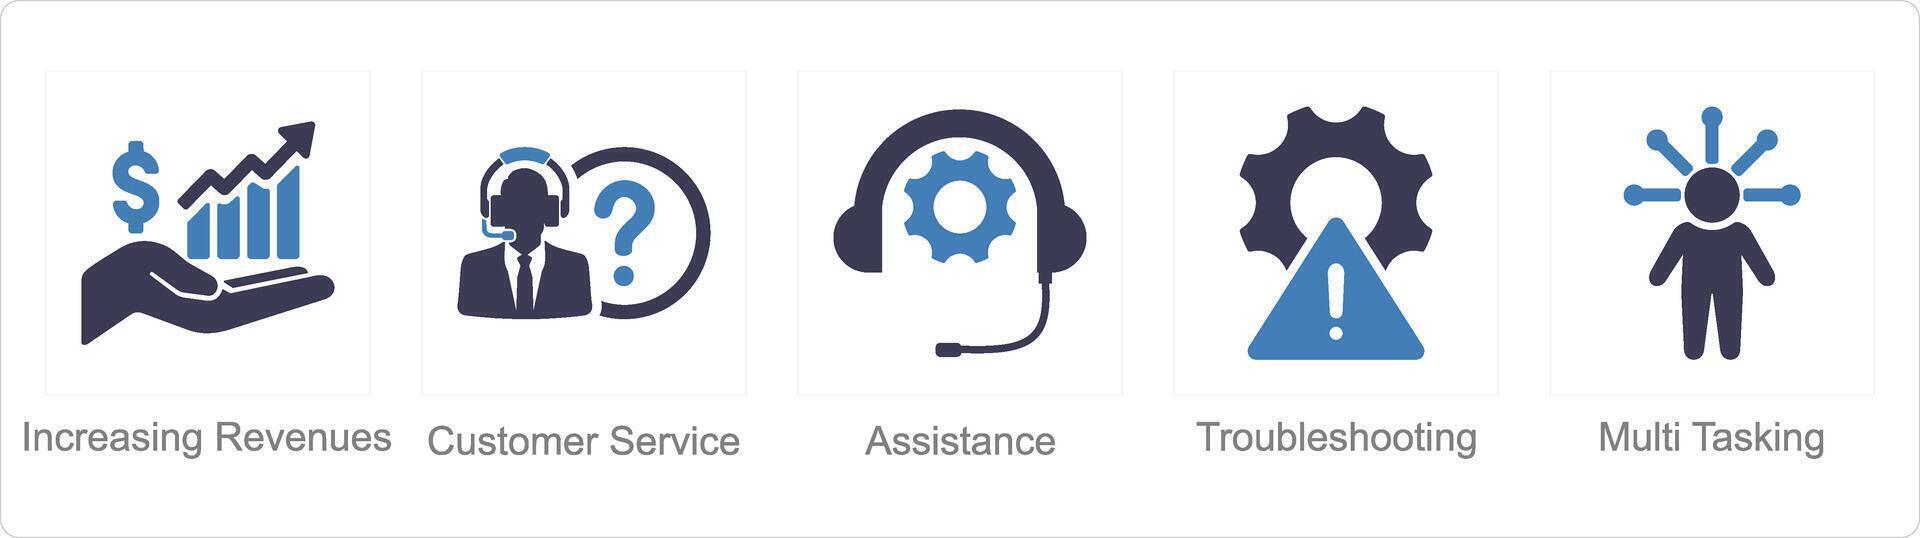 une ensemble de 5 client un service Icônes comme en augmentant des revenus, client service, assistance vecteur